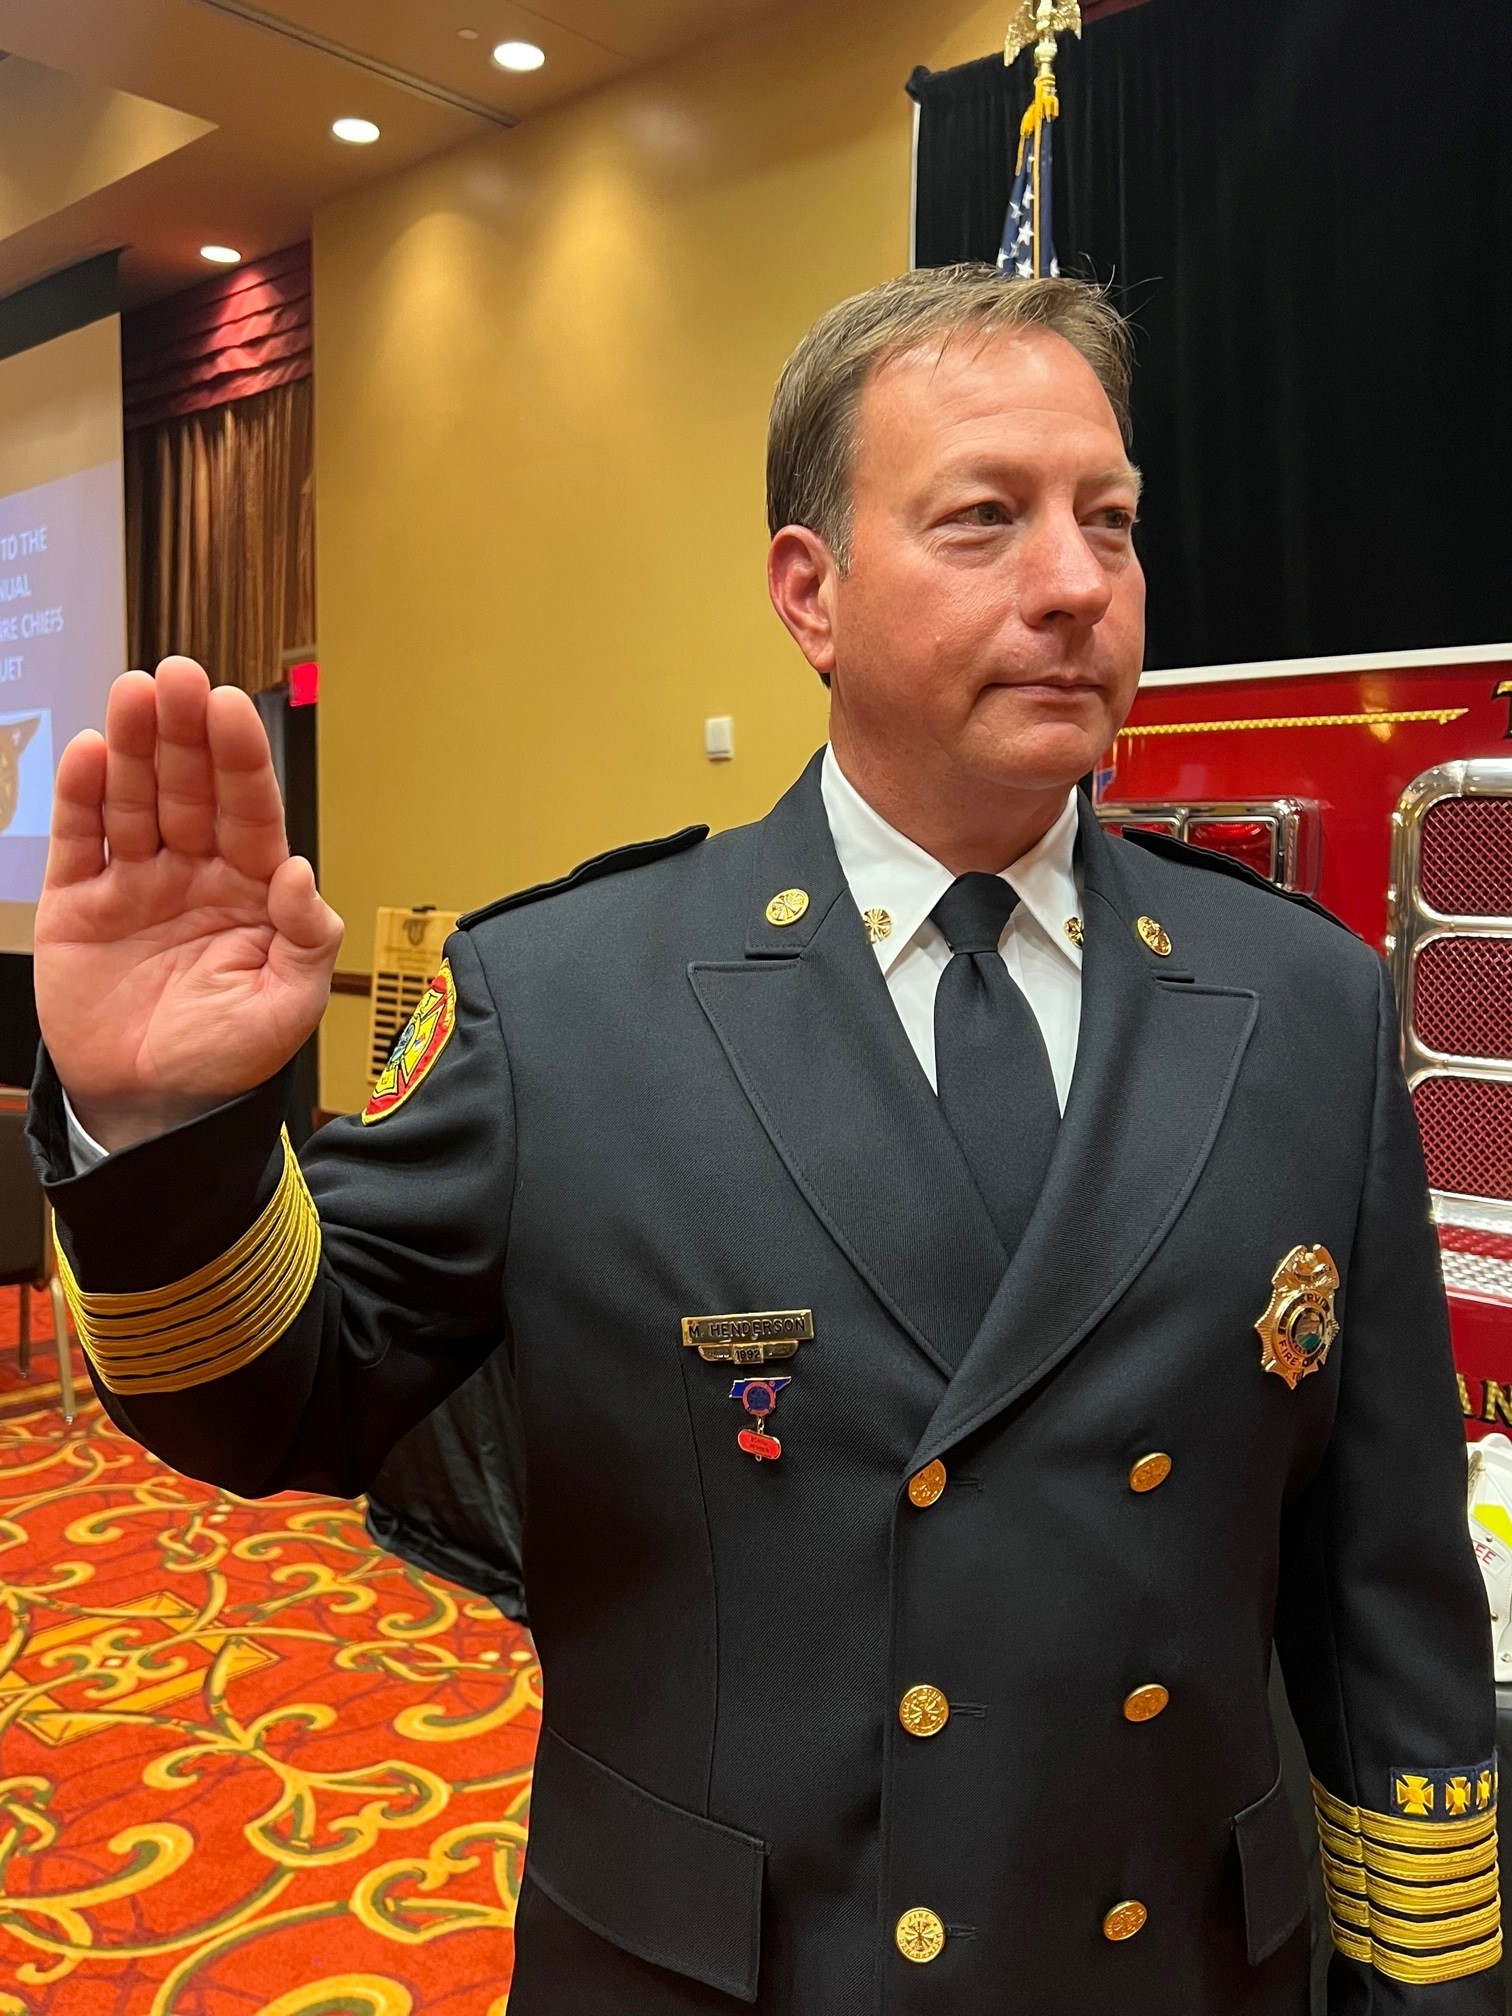 Chefe dos bombeiros de Sevierville é nomeado presidente da associação